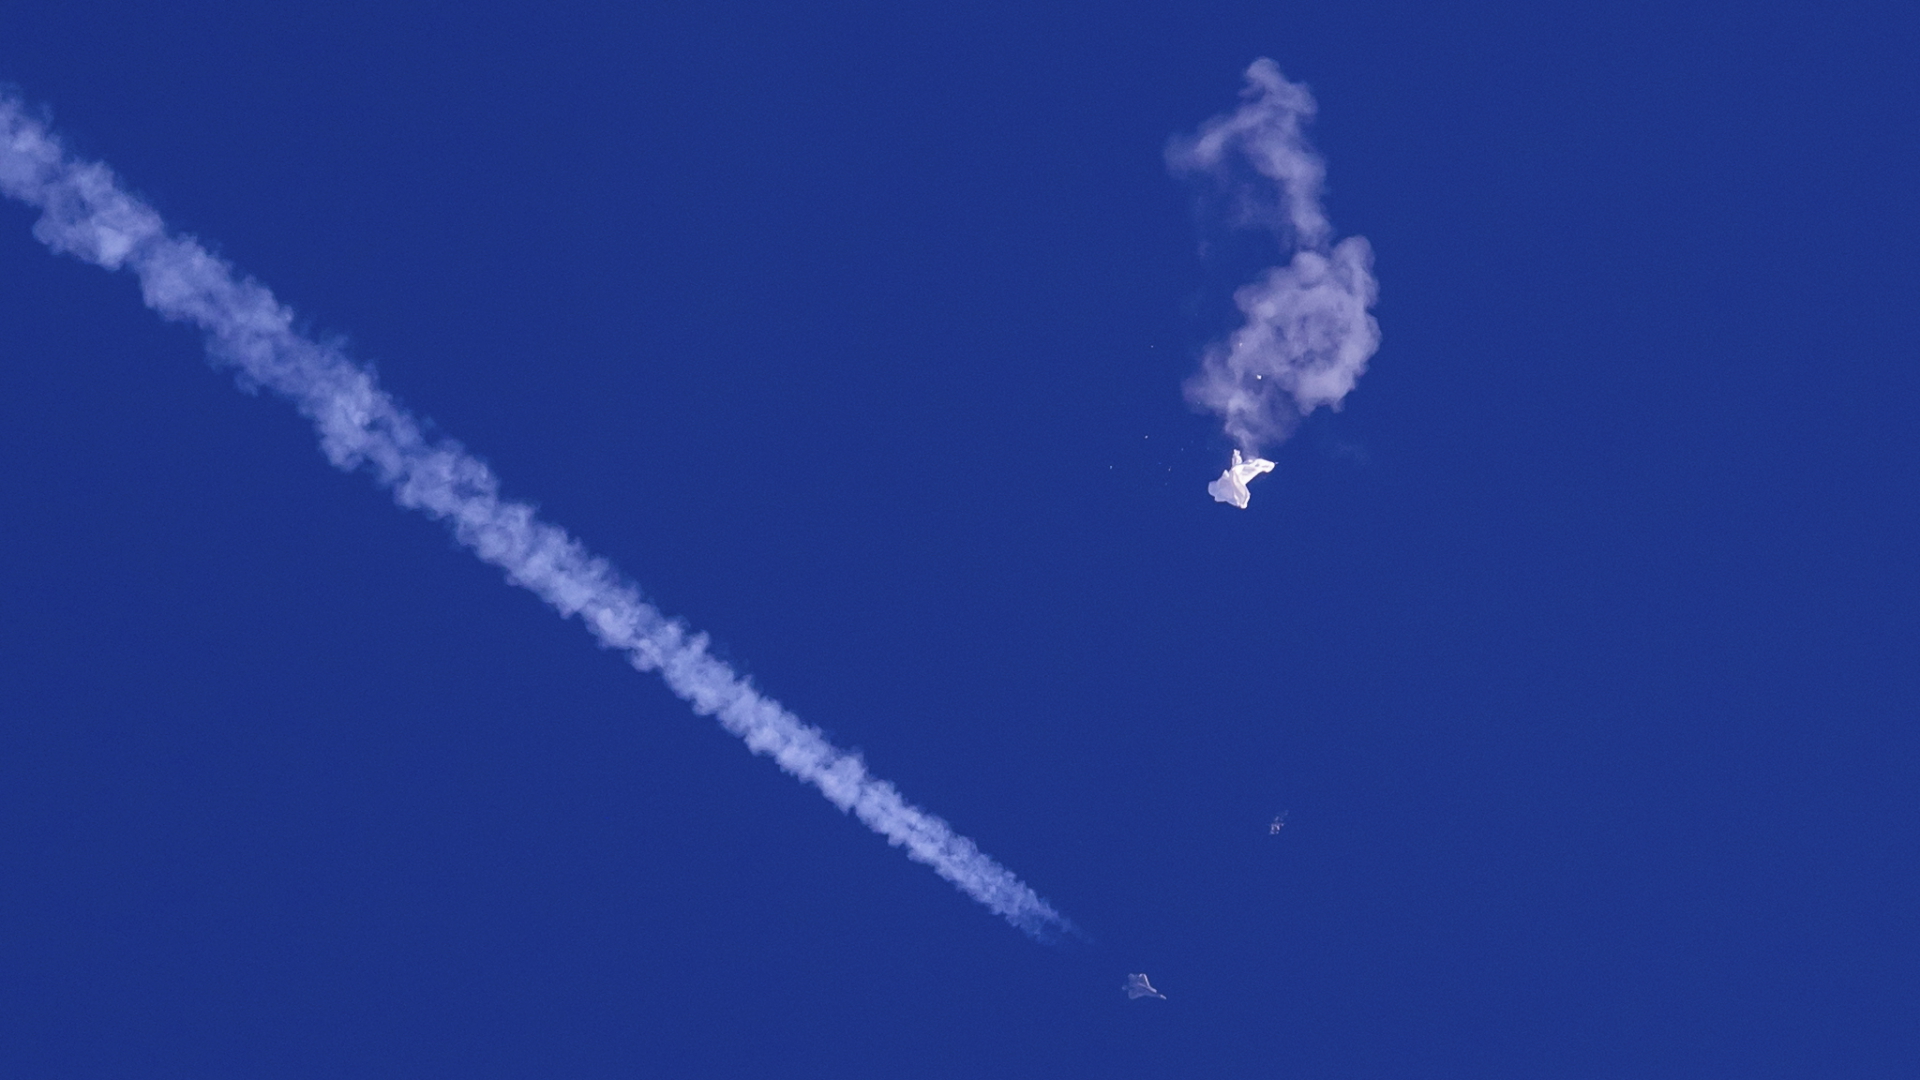 Die Überreste eines Ballons schweben in der Luft, darunter sind ein Kampfjet und seine Kondensstreifen zu sehen. (Aufnahme vom 4. Februar 2023) | dpa